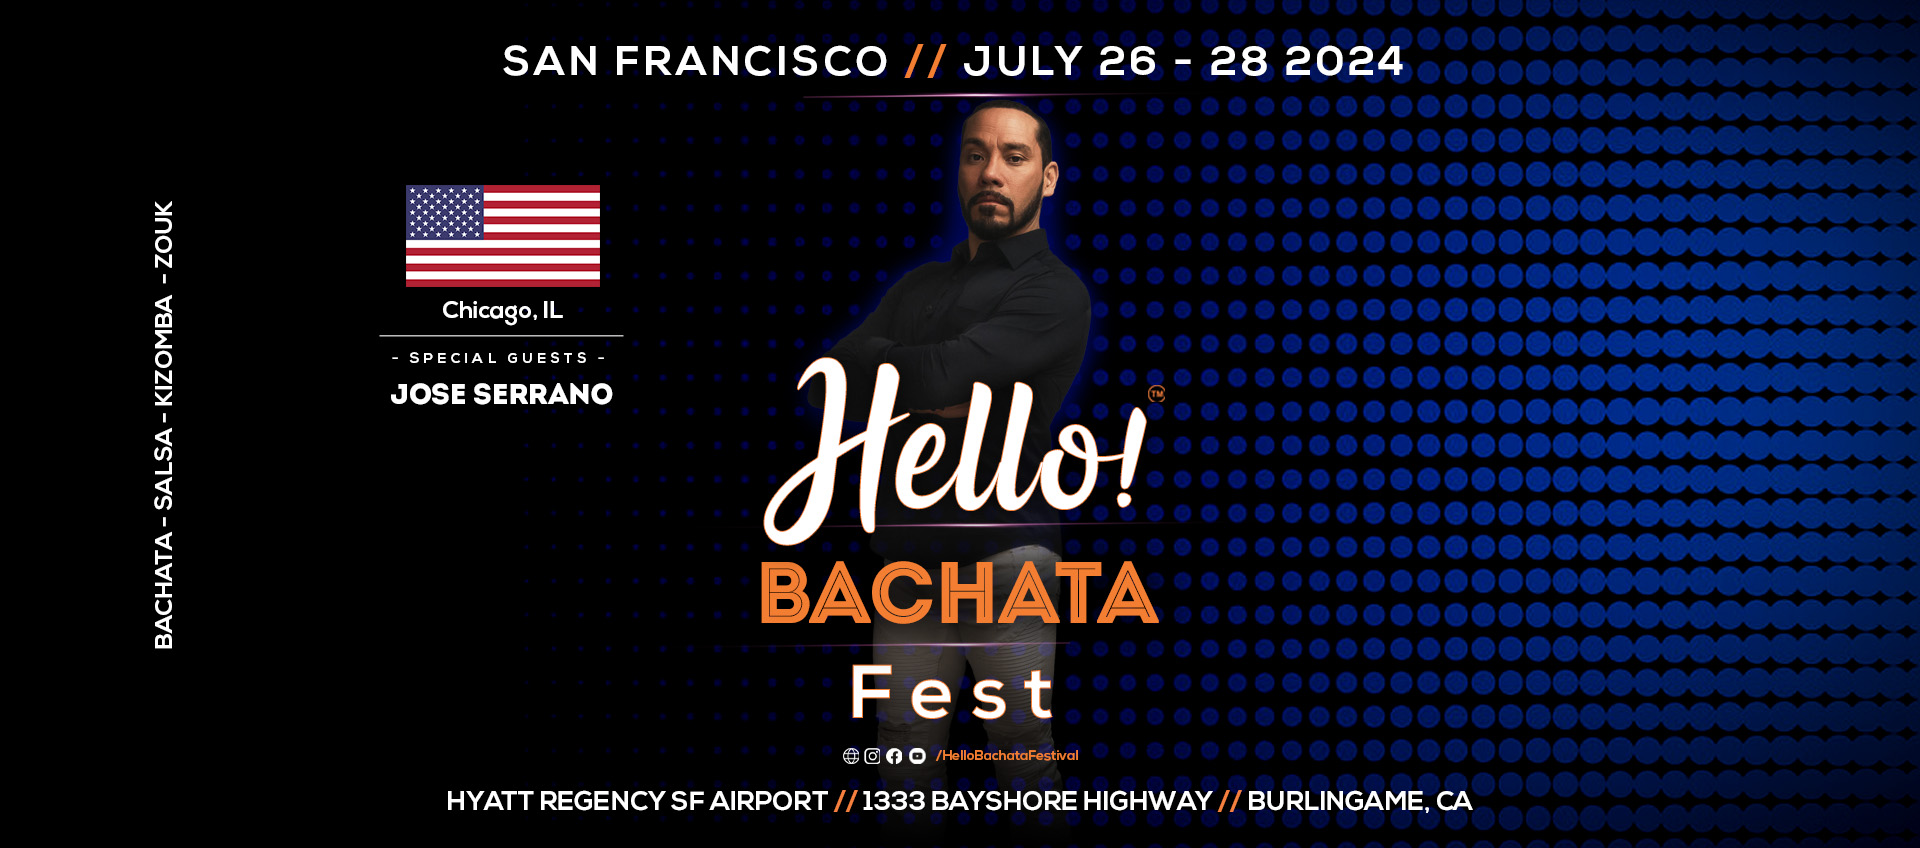 Hello! Bachata Fest - Jose Serrano - Evolucion Latin Dance Company - Chicago, Illinois